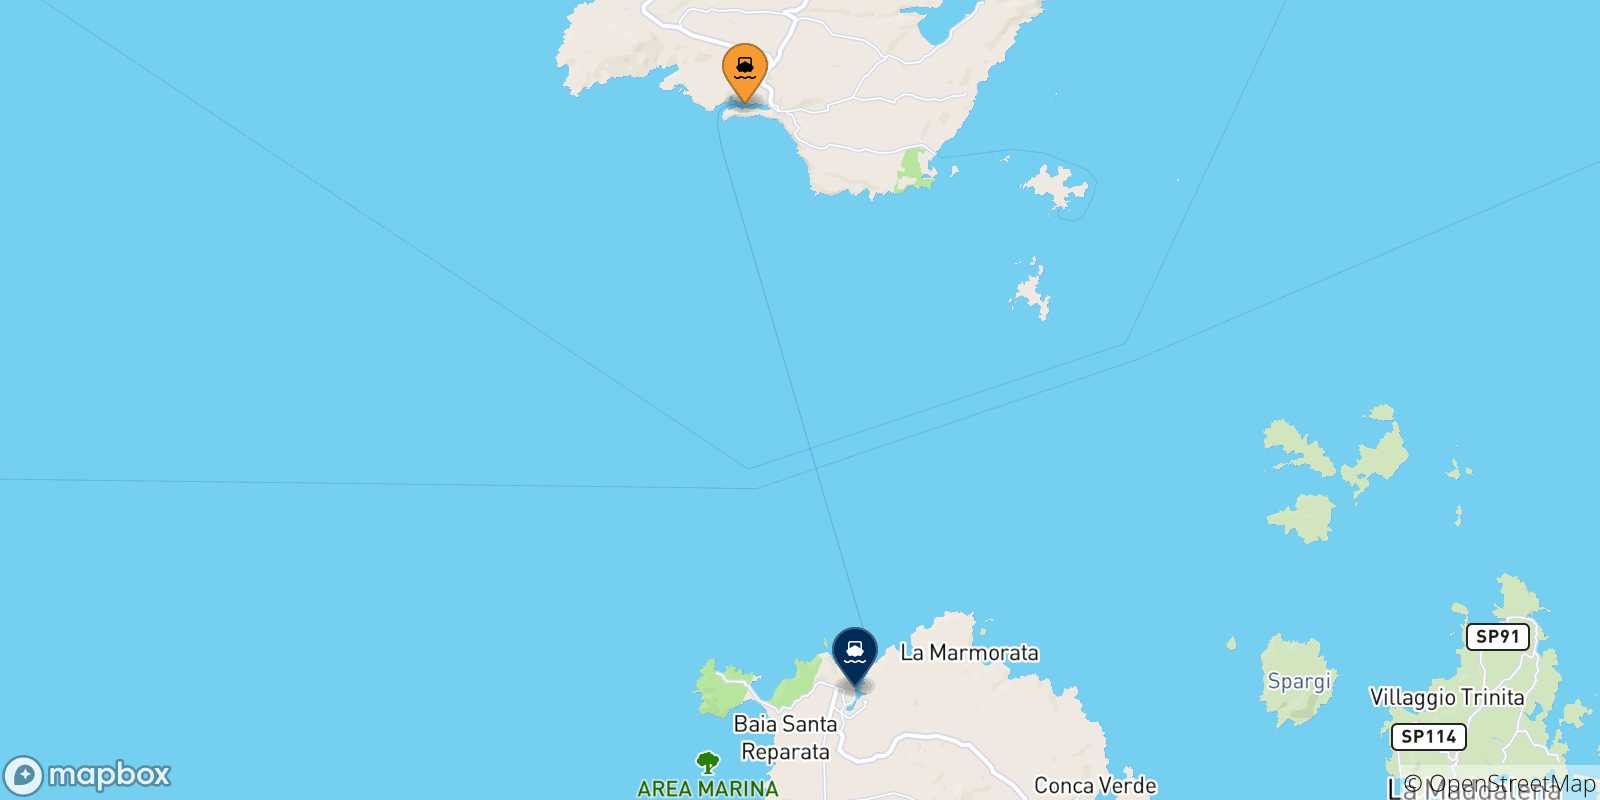 Mapa de las posibles rutas entre Bonifacio y  Cerdeña